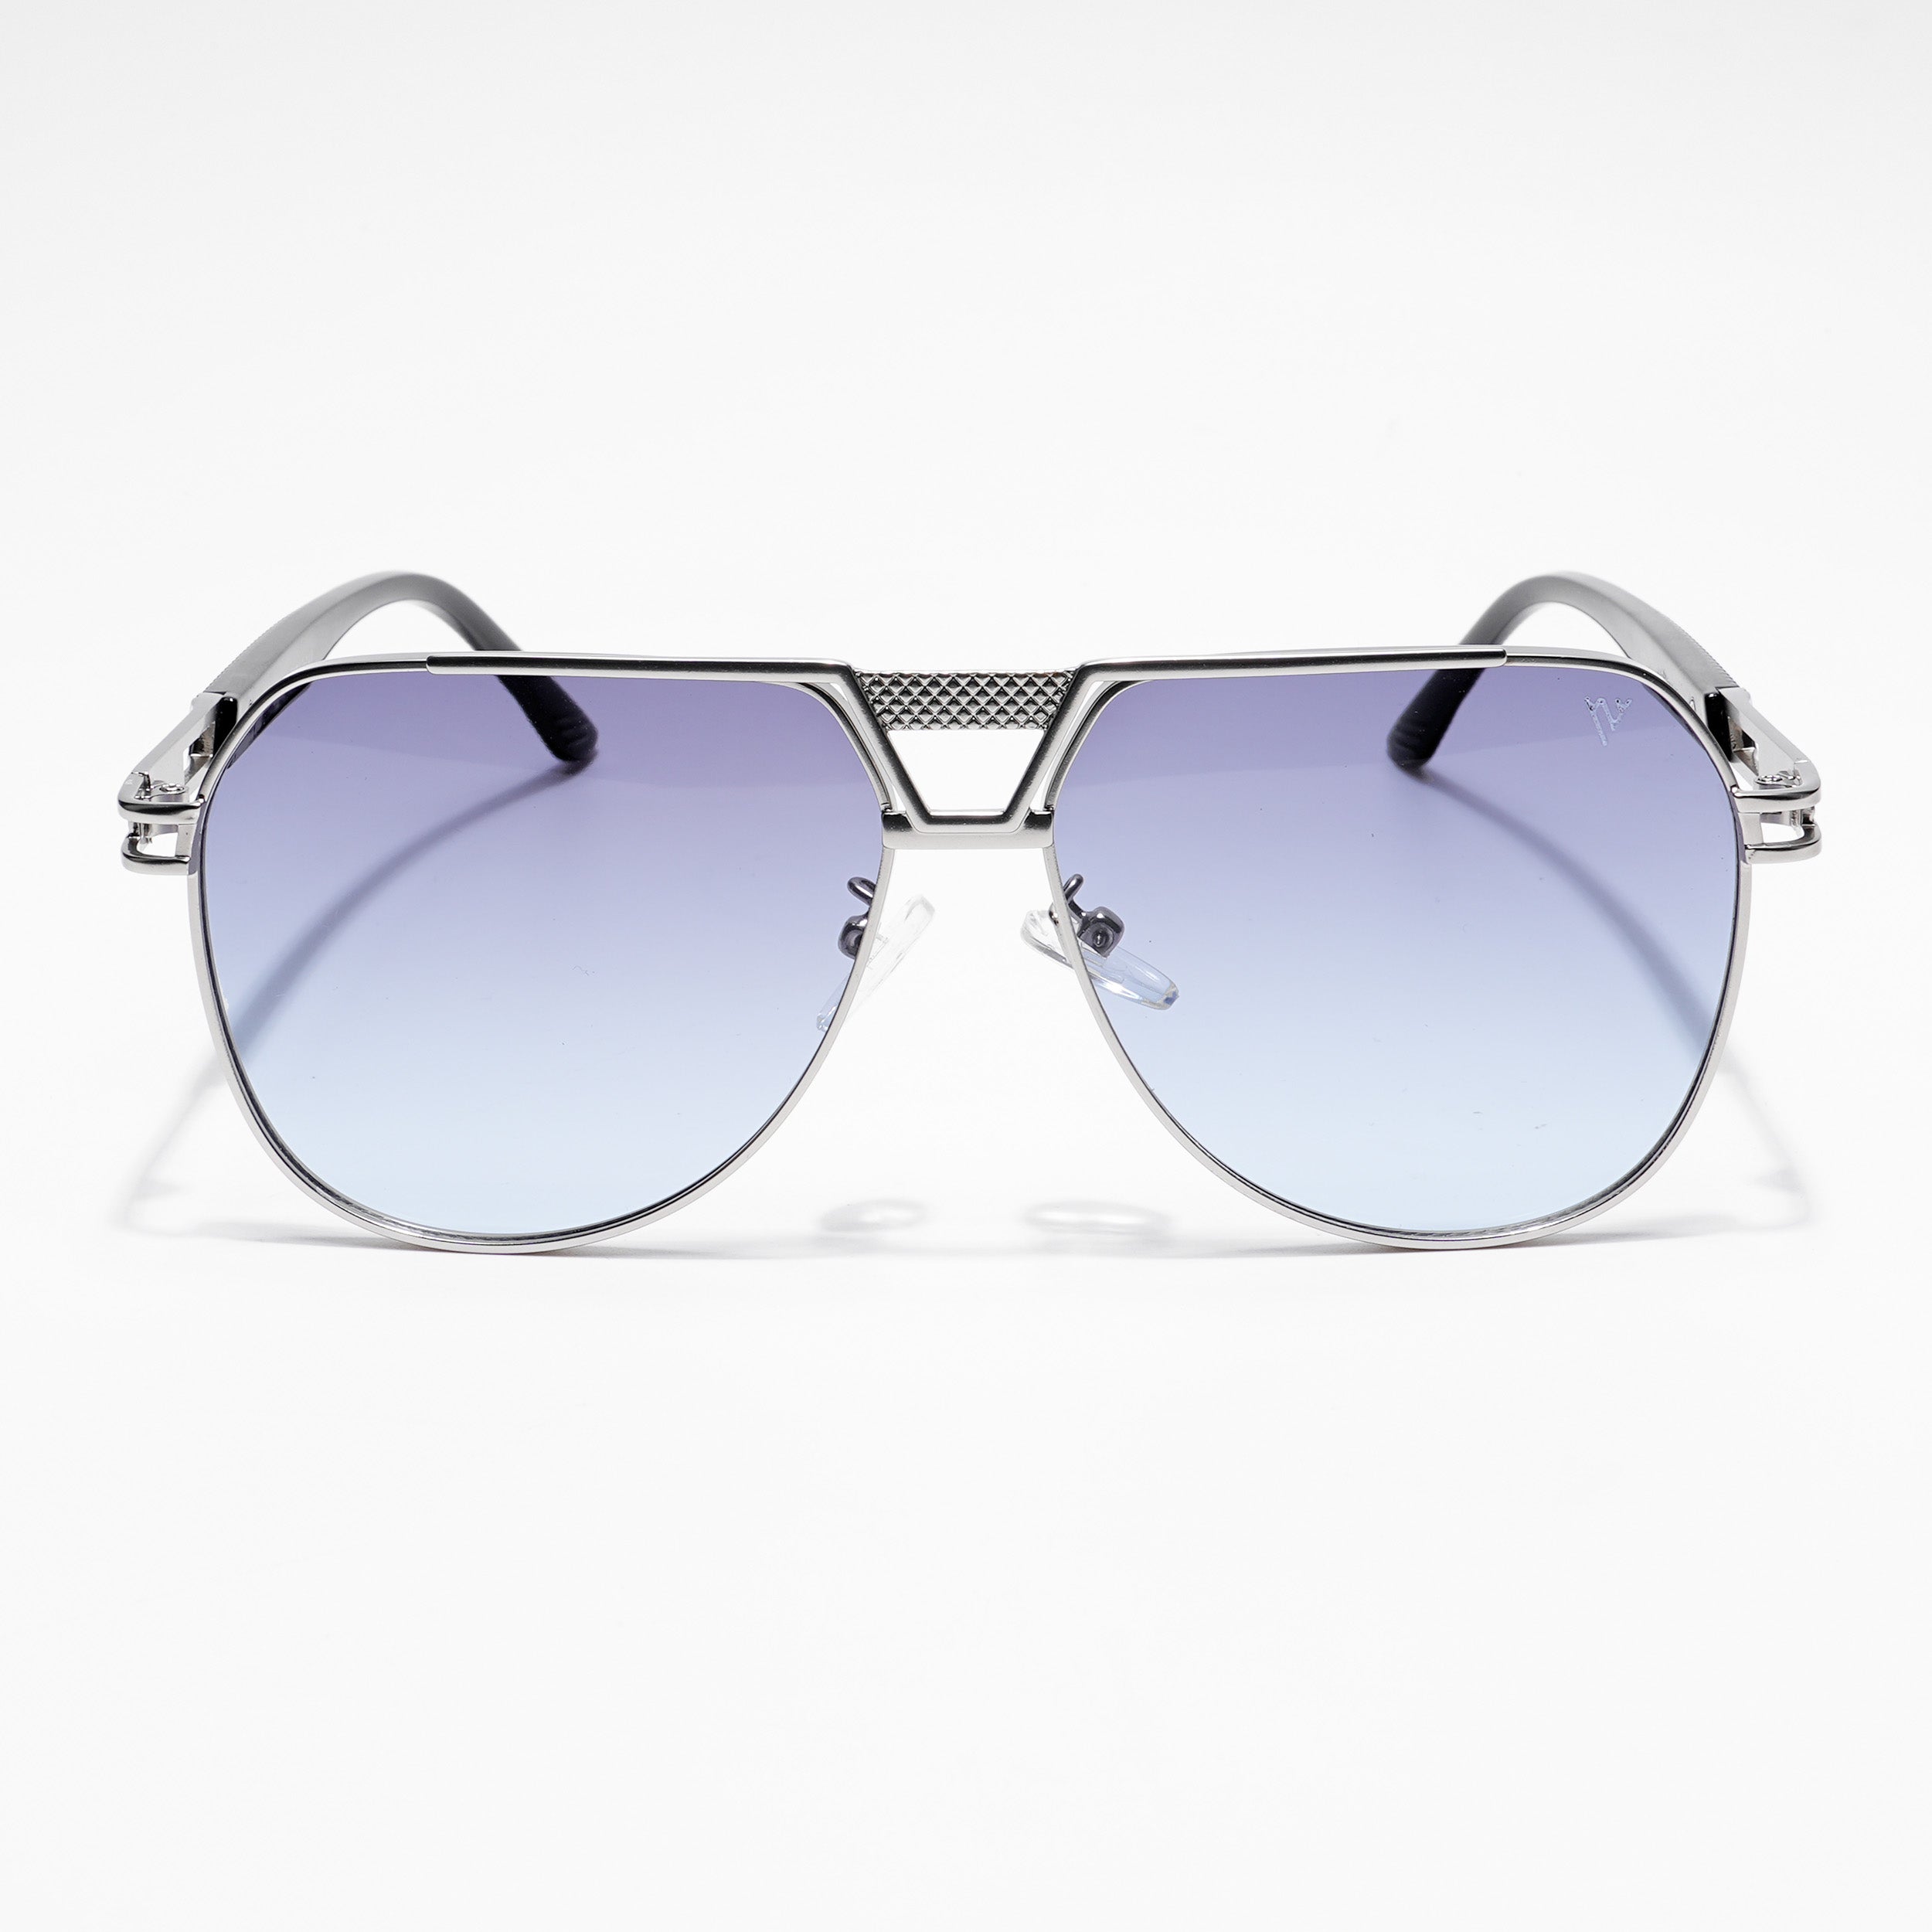 Voyage Aviator Sunglasses for Men & Women (Blue Lens | Silver Frame  - MG5205)